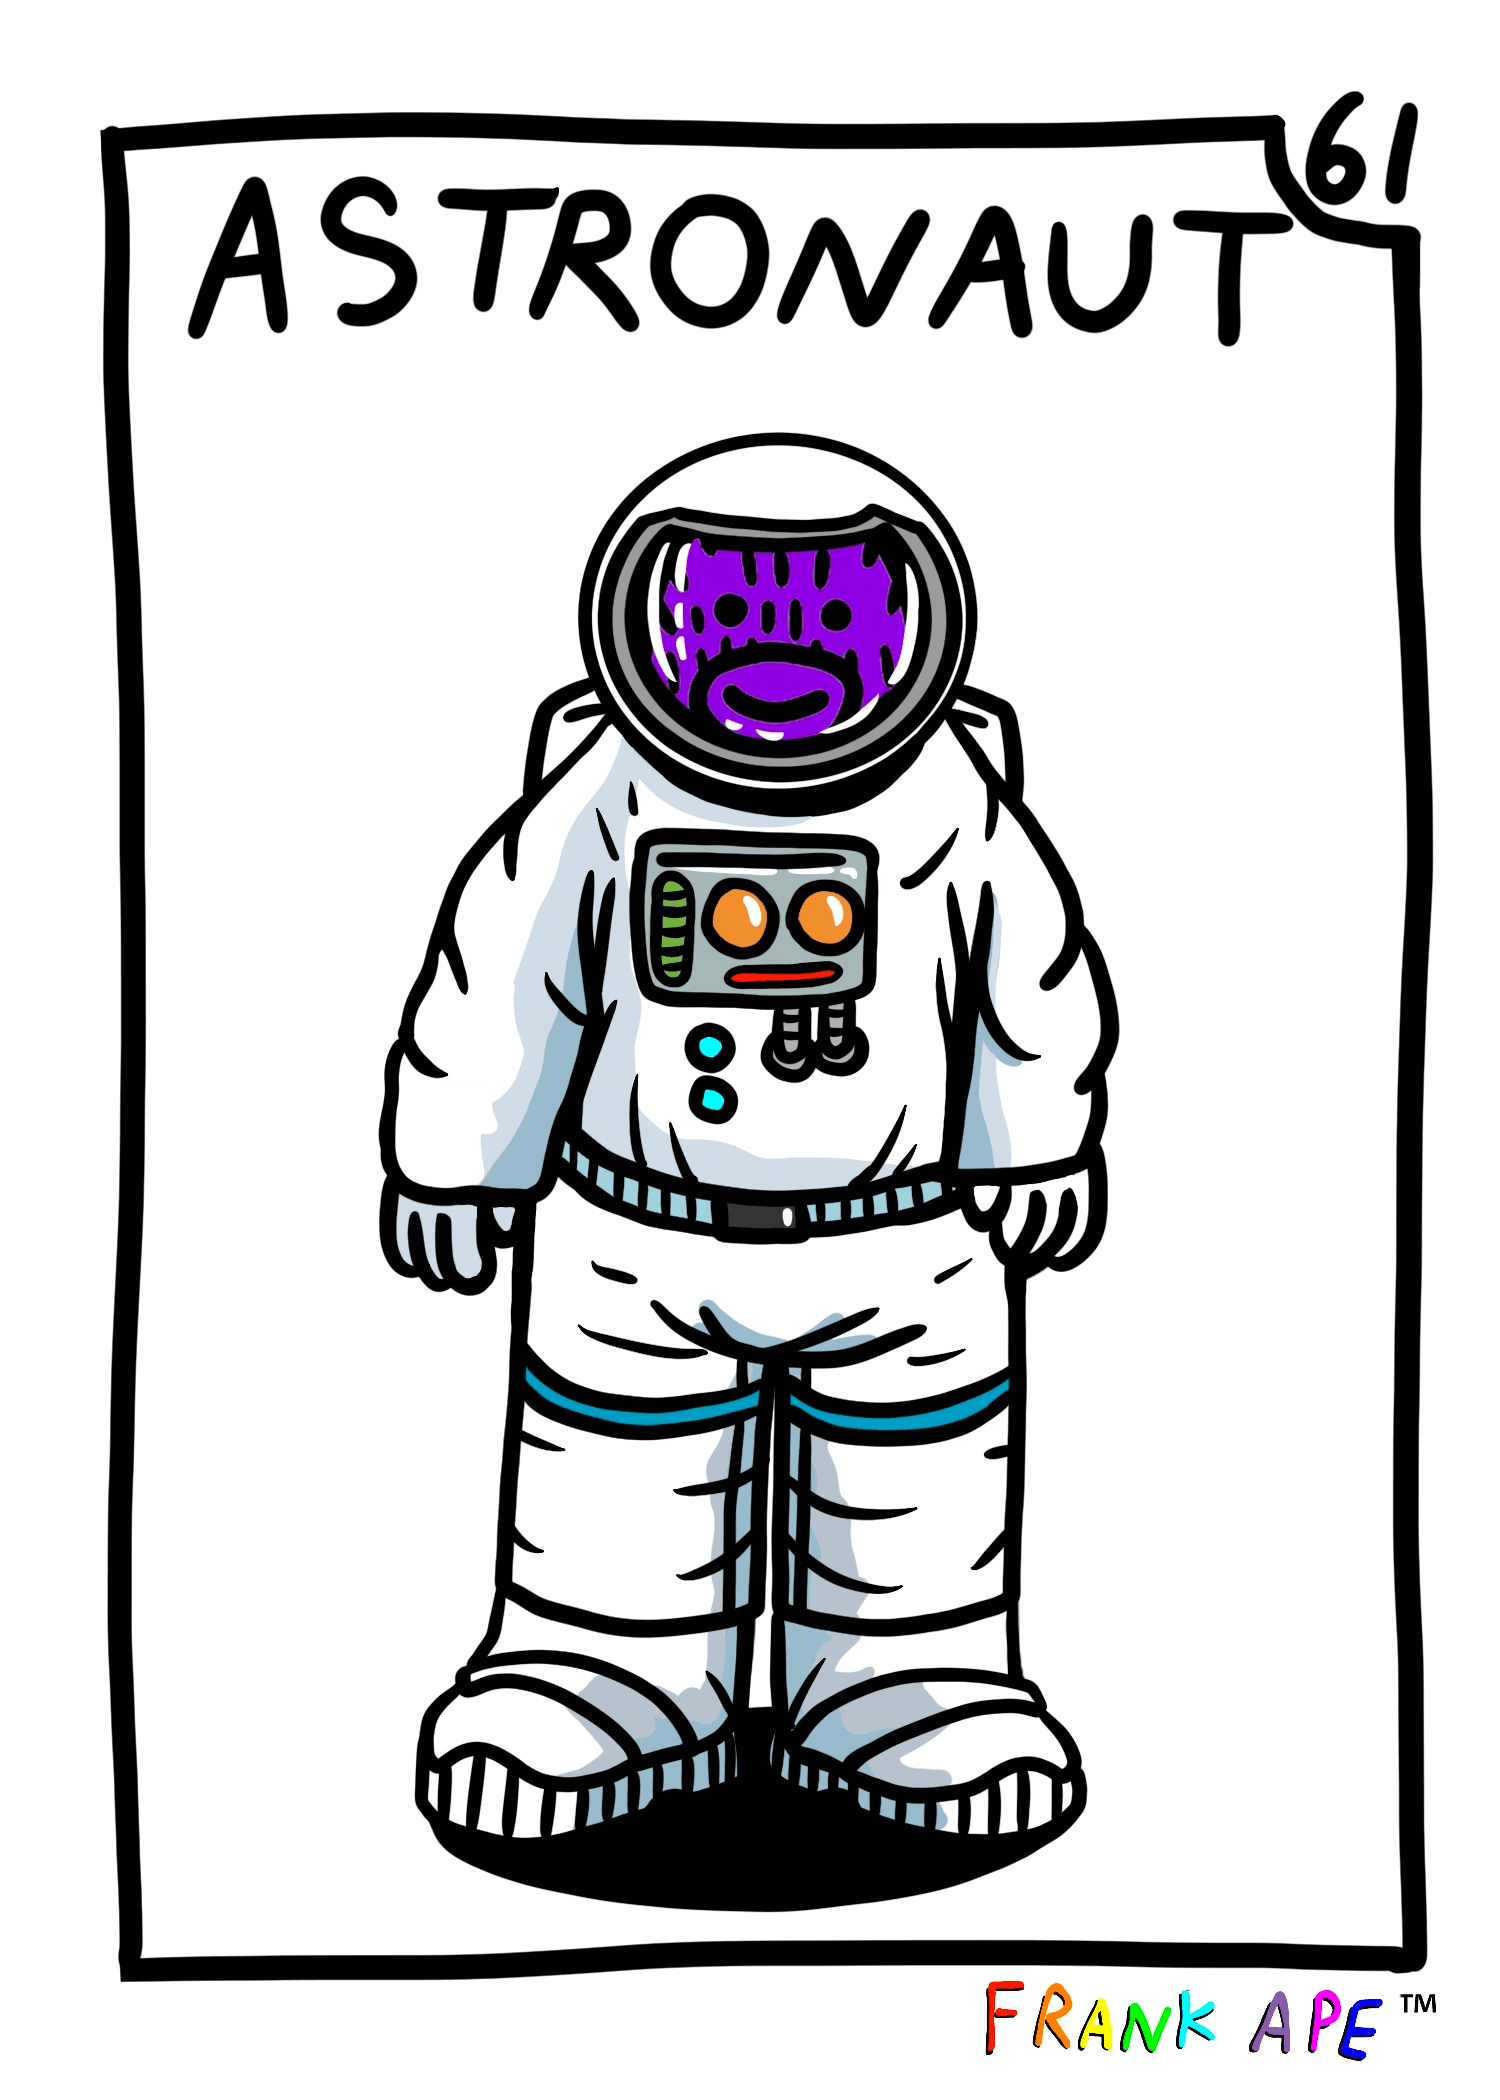 Frank Friends #61 - Astronaut